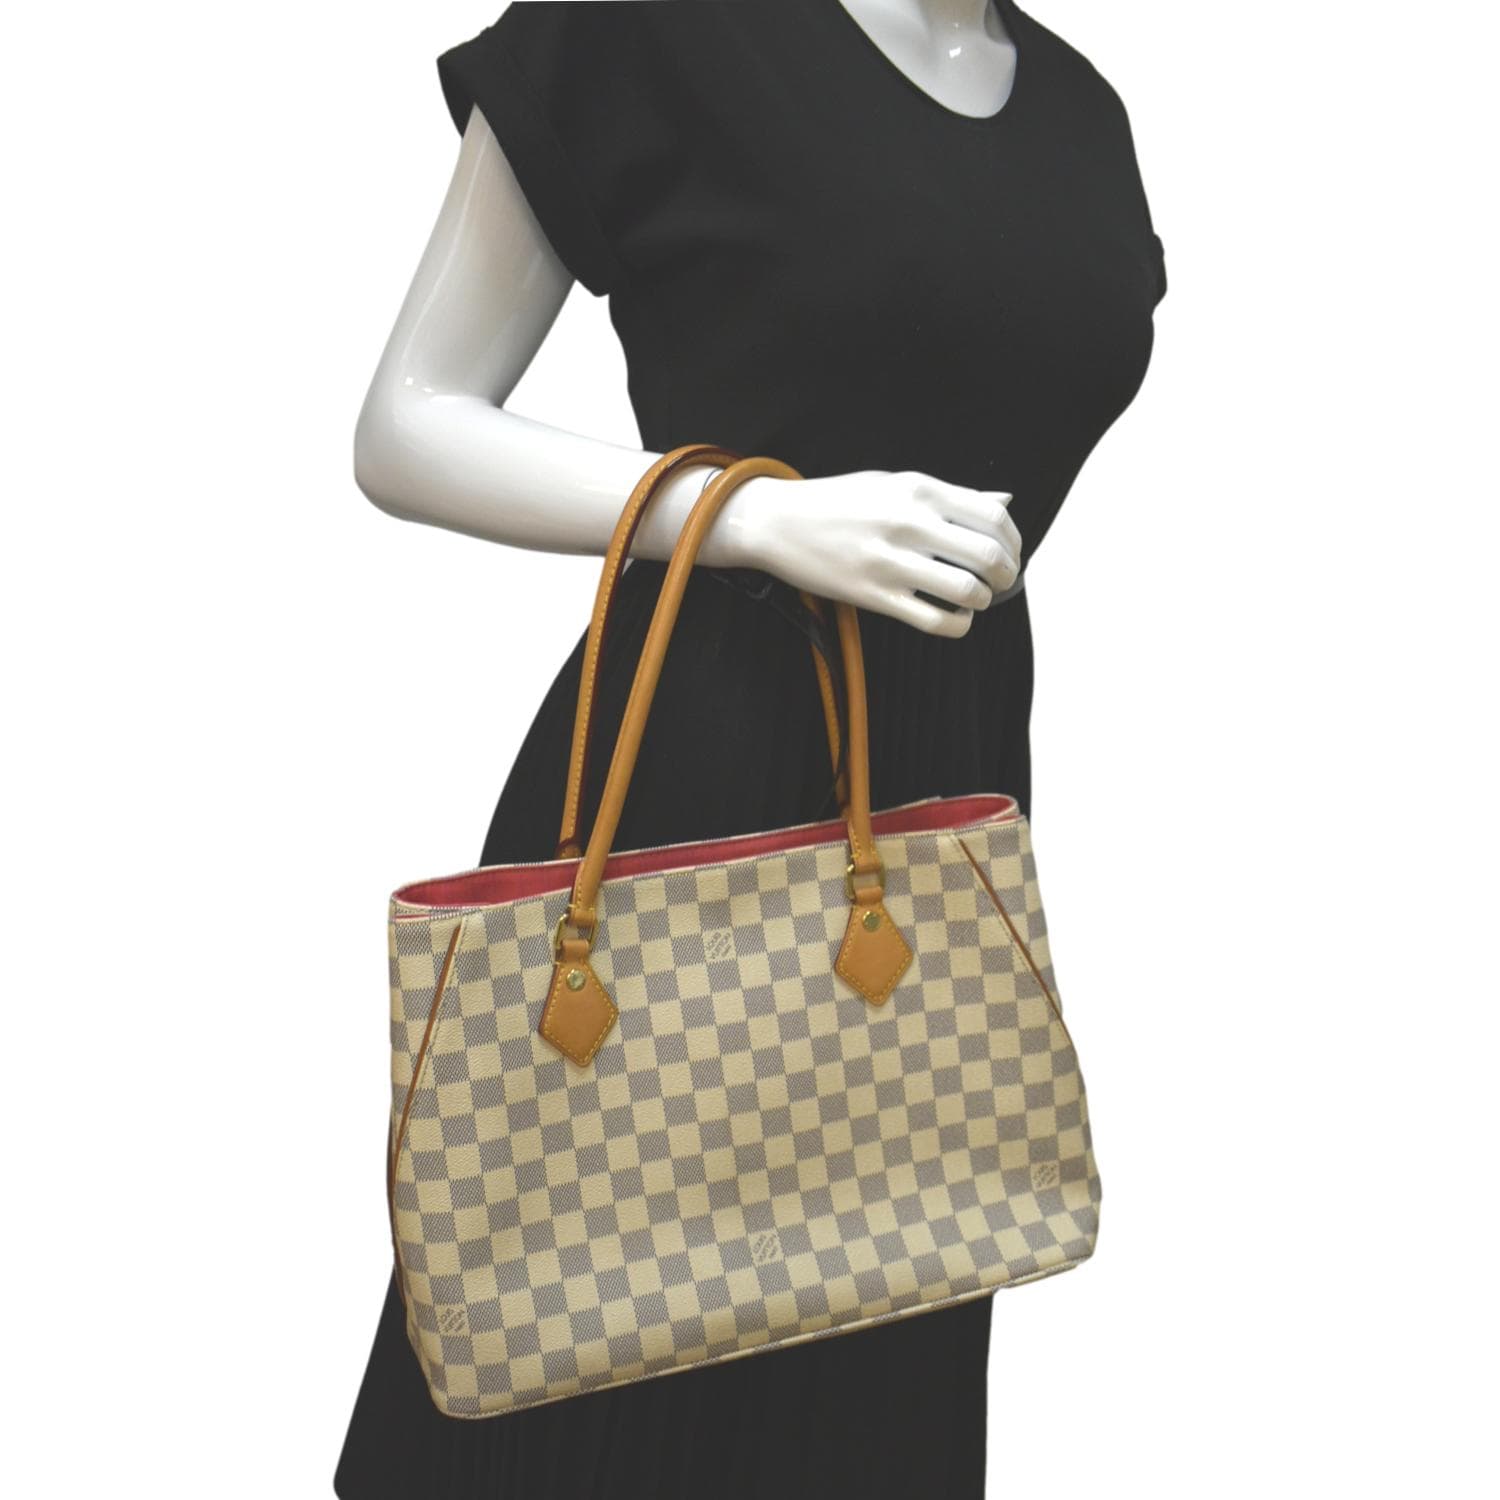 Louis Vuitton Calvi Tote Bag